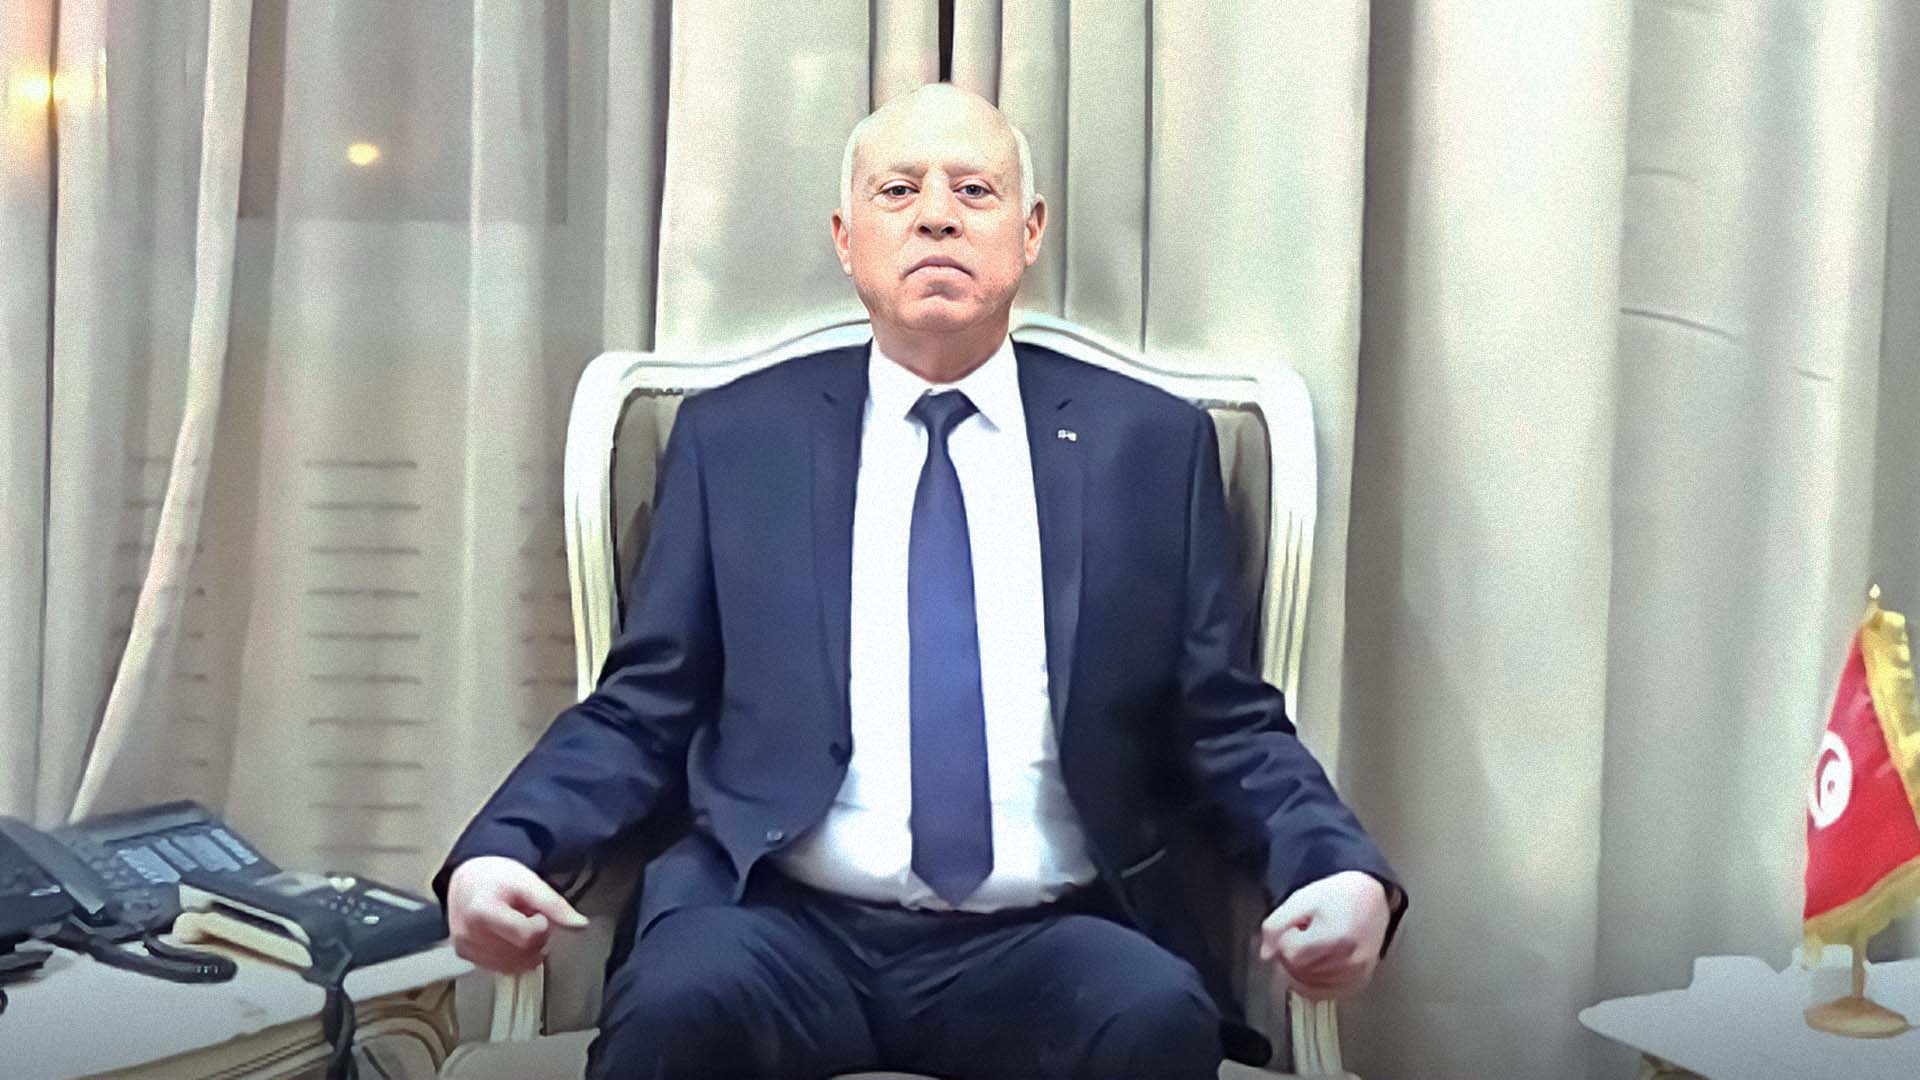 صورة سعيّد يحلّ المجلس الأعلى للقضاء بعدما بات قادراً بنفسه على أداء مهامه